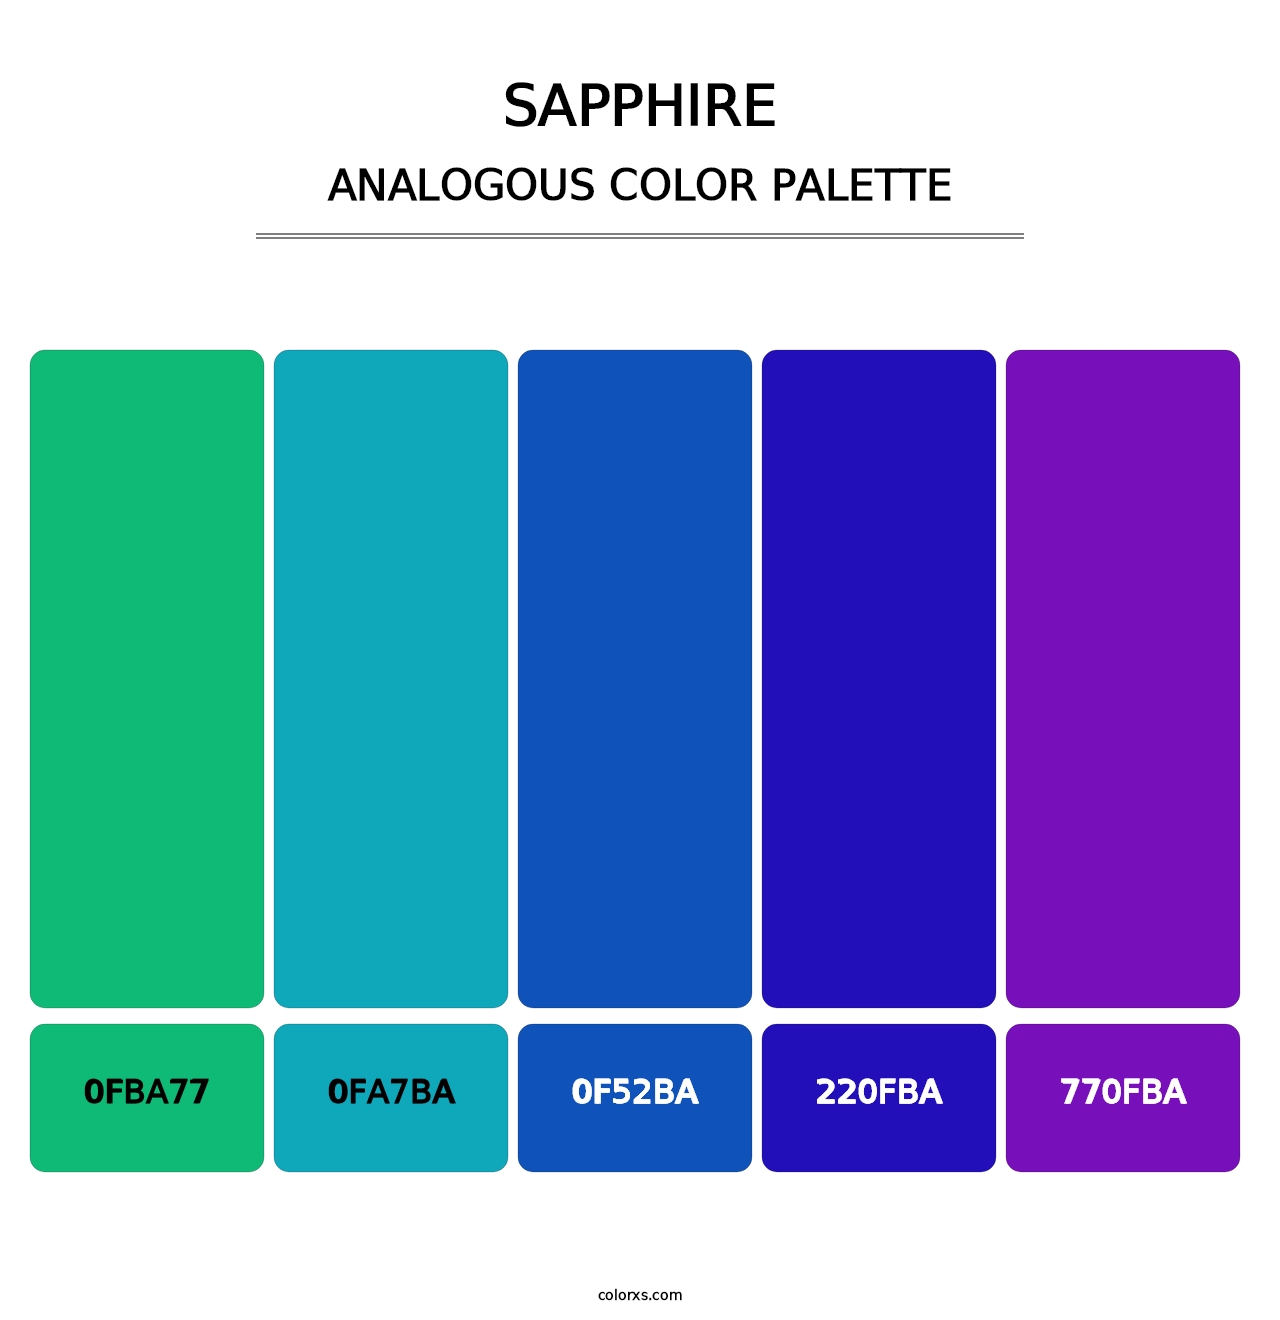 Sapphire - Analogous Color Palette